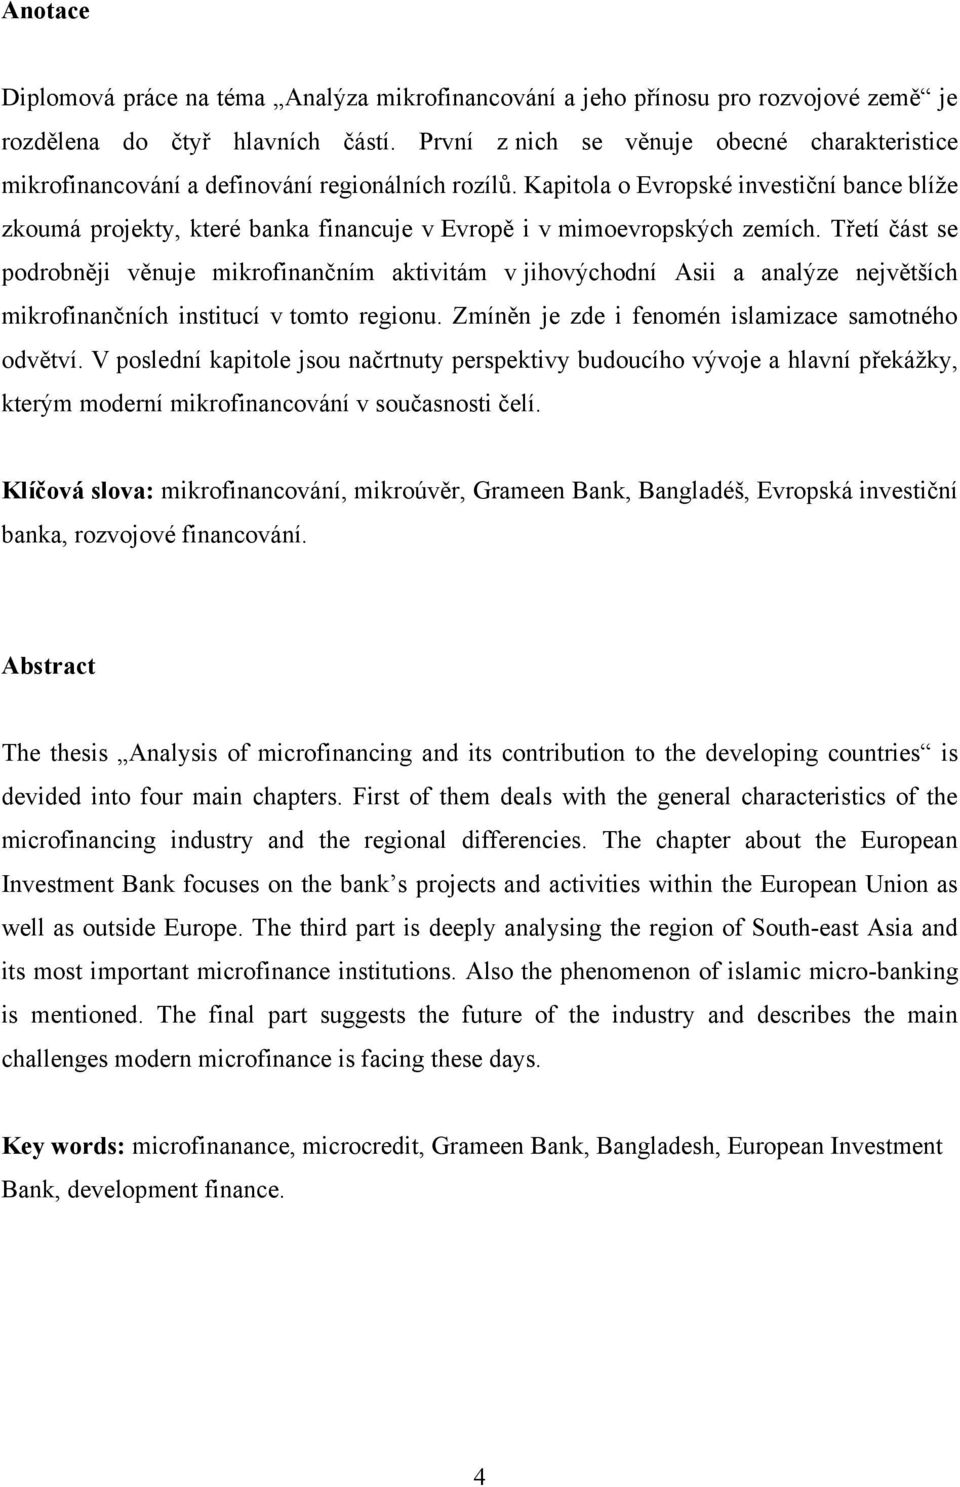 Kapitola o Evropské investiční bance blíţe zkoumá projekty, které banka financuje v Evropě i v mimoevropských zemích.